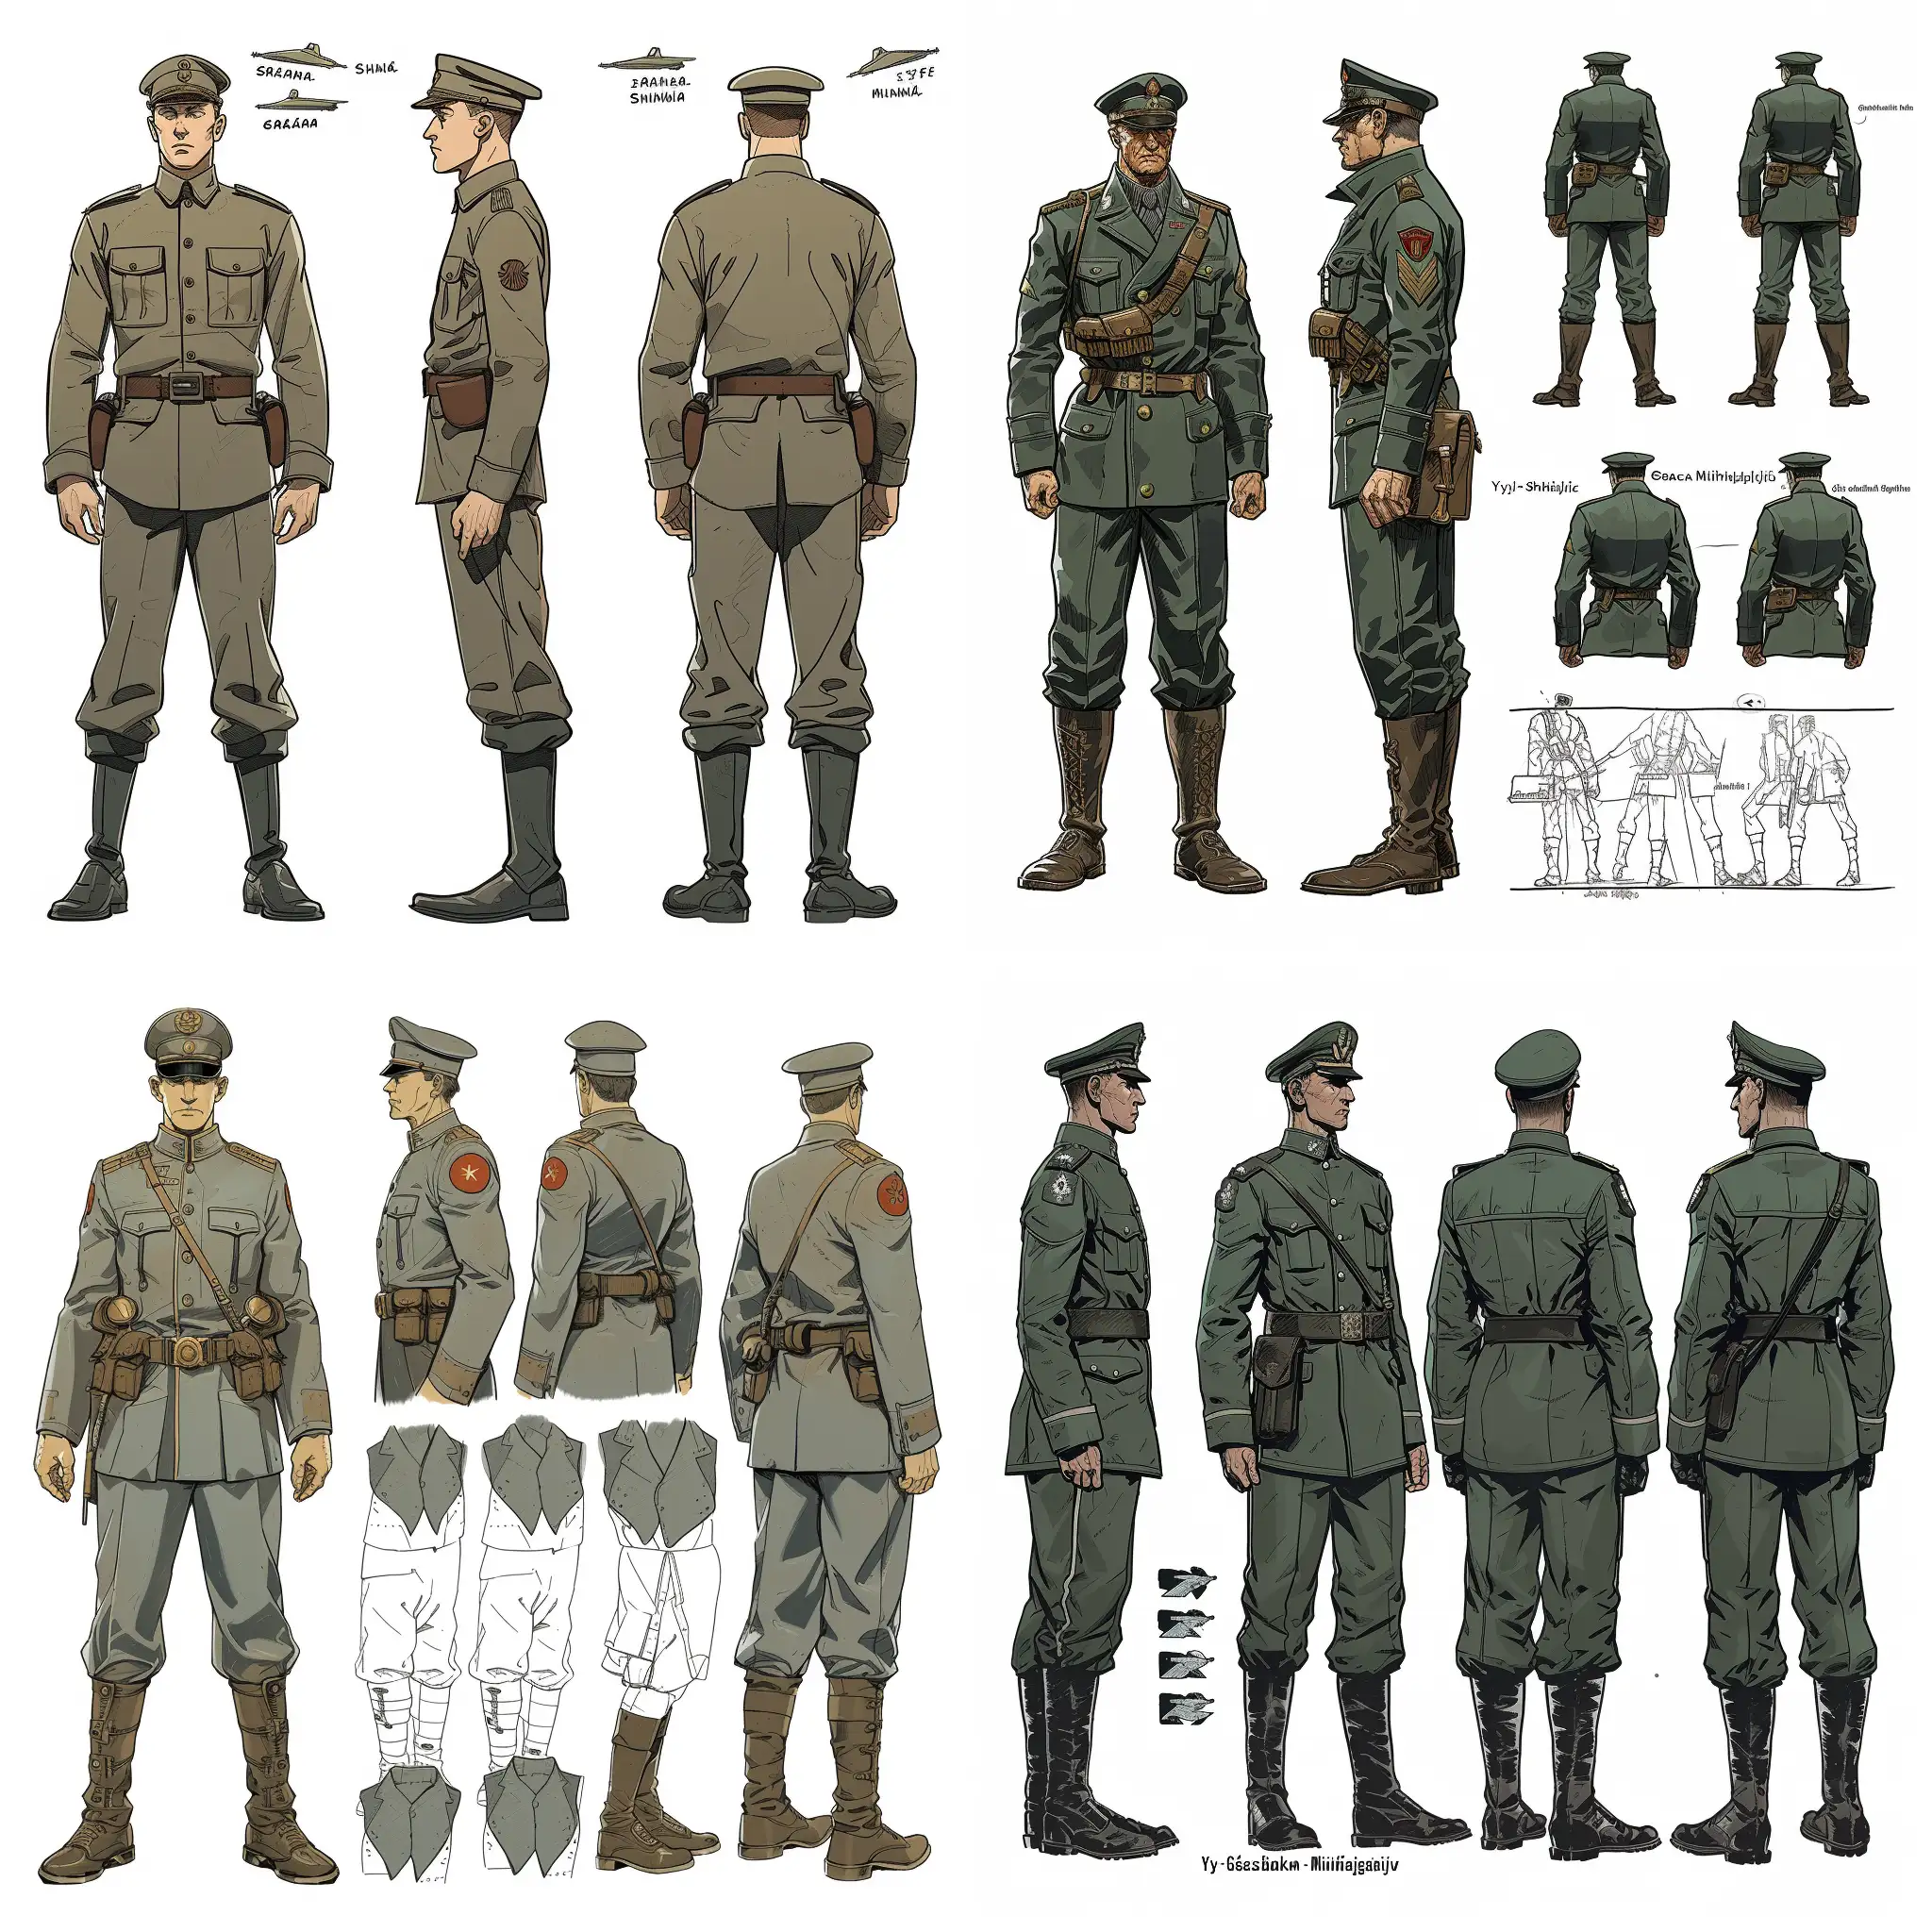 World-War-II-Military-Character-Design-General-Graa-Mihajlilovi-in-Yoji-Shinkawa-Style